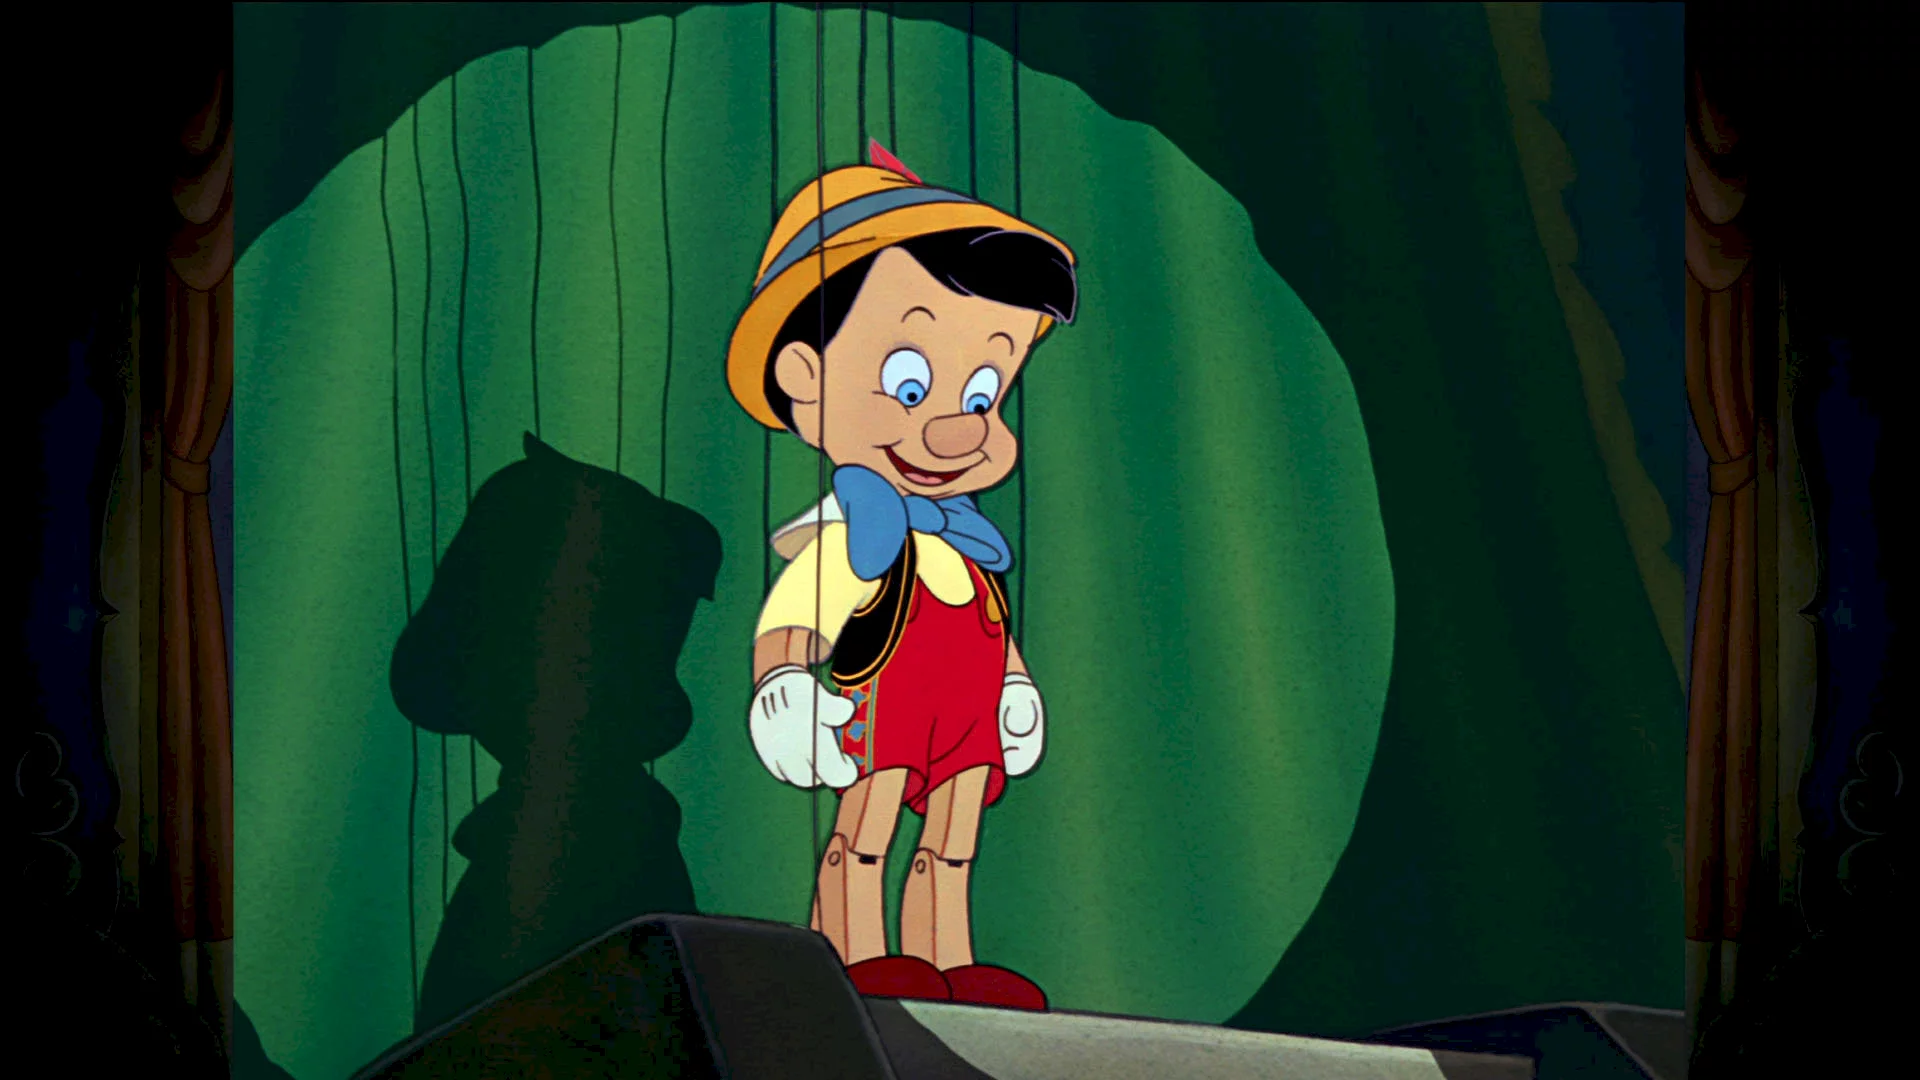 Photo 4 du film : Pinocchio